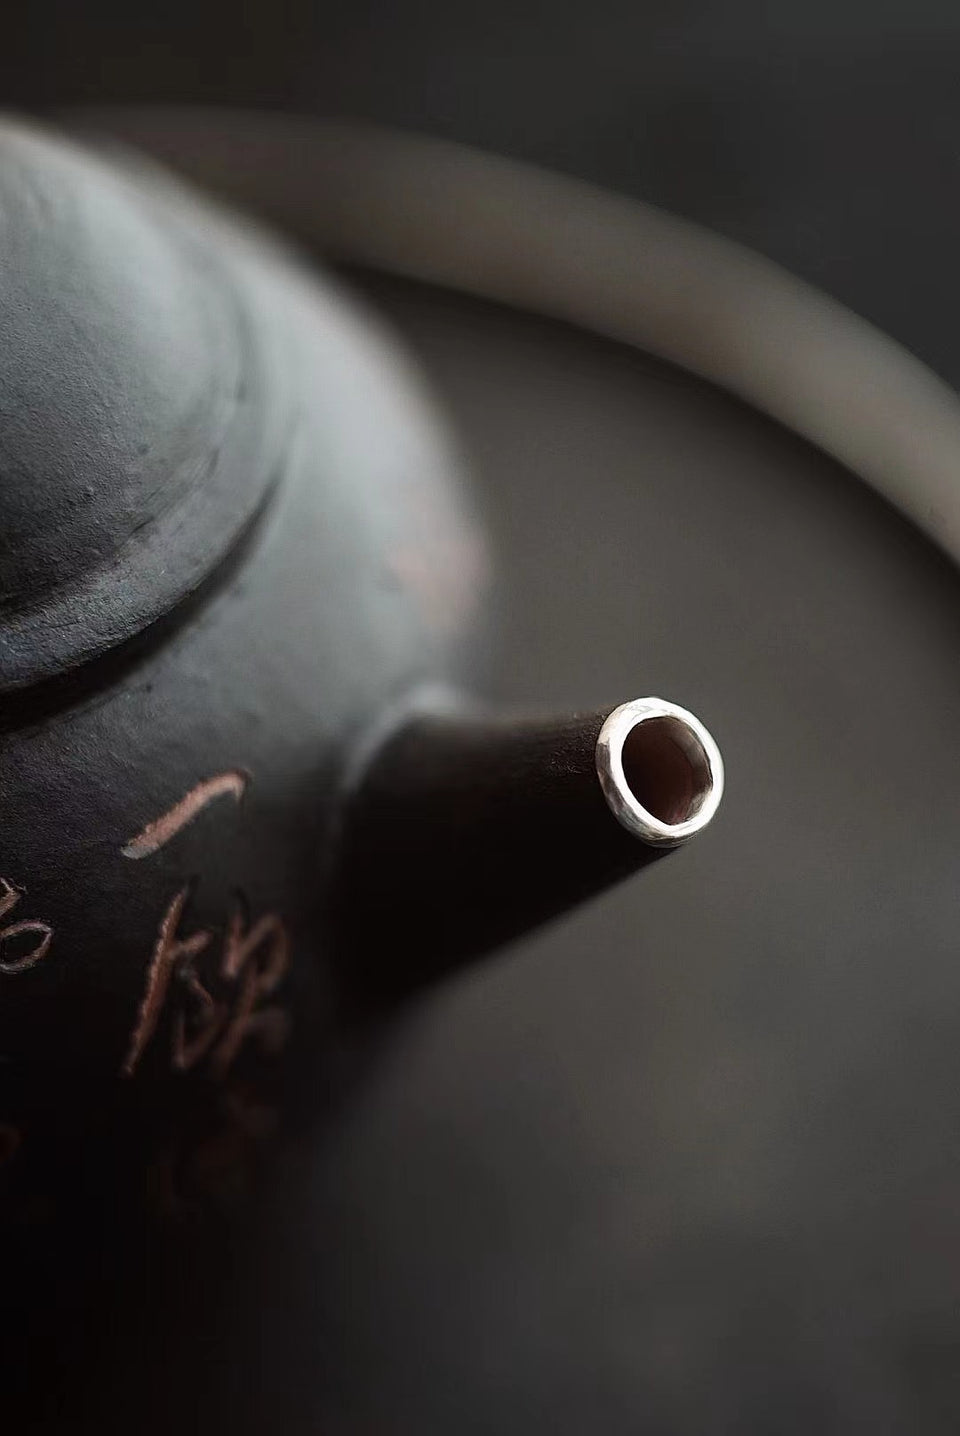 Zisha Black Glaze Teapot with Hand-Carved Poem by Ji Shang Zao Wu